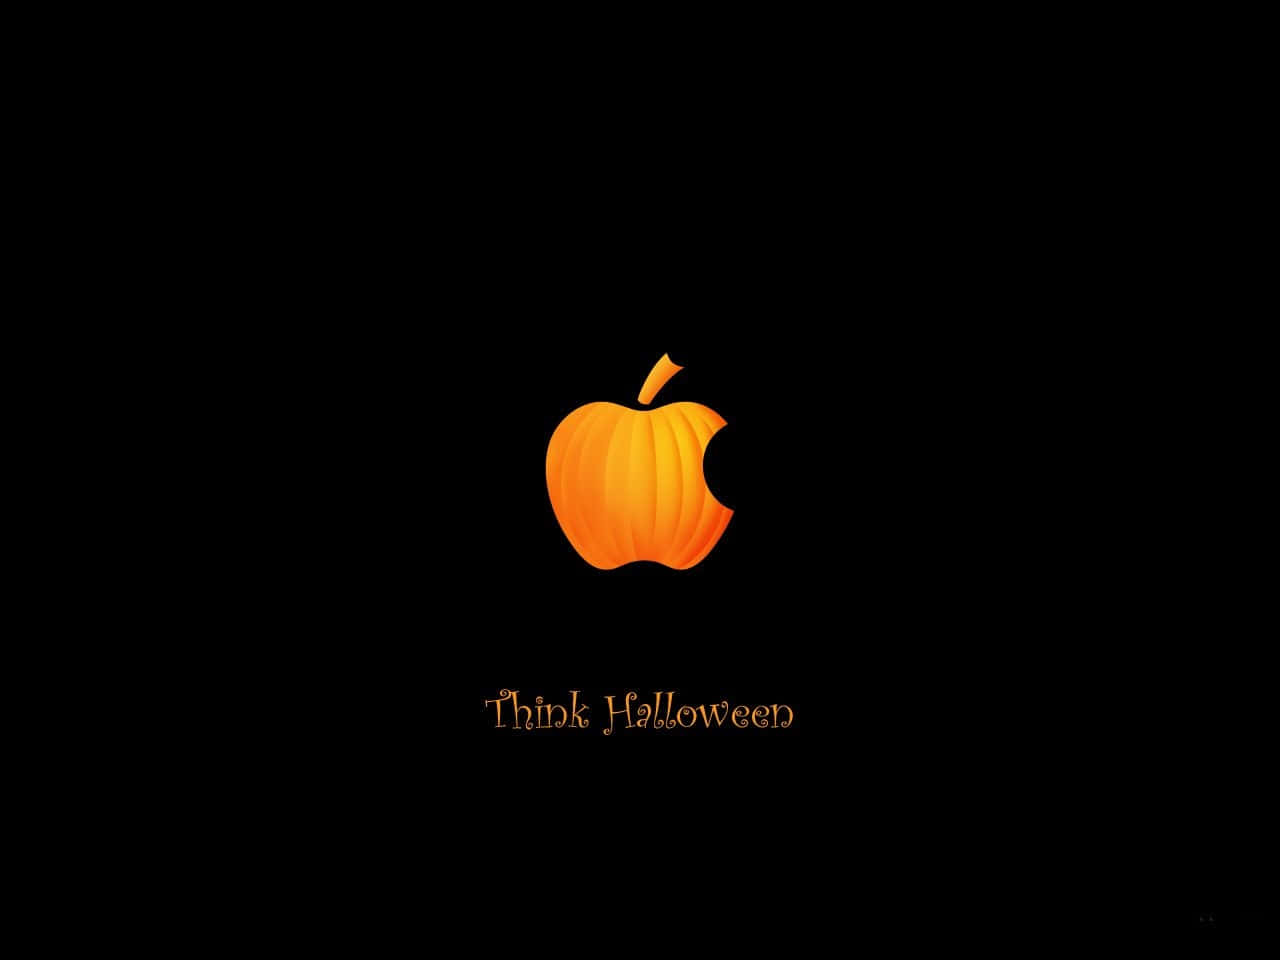 Halloweenimagen Linda Piensa De Manera Diferente Piensa En Halloween